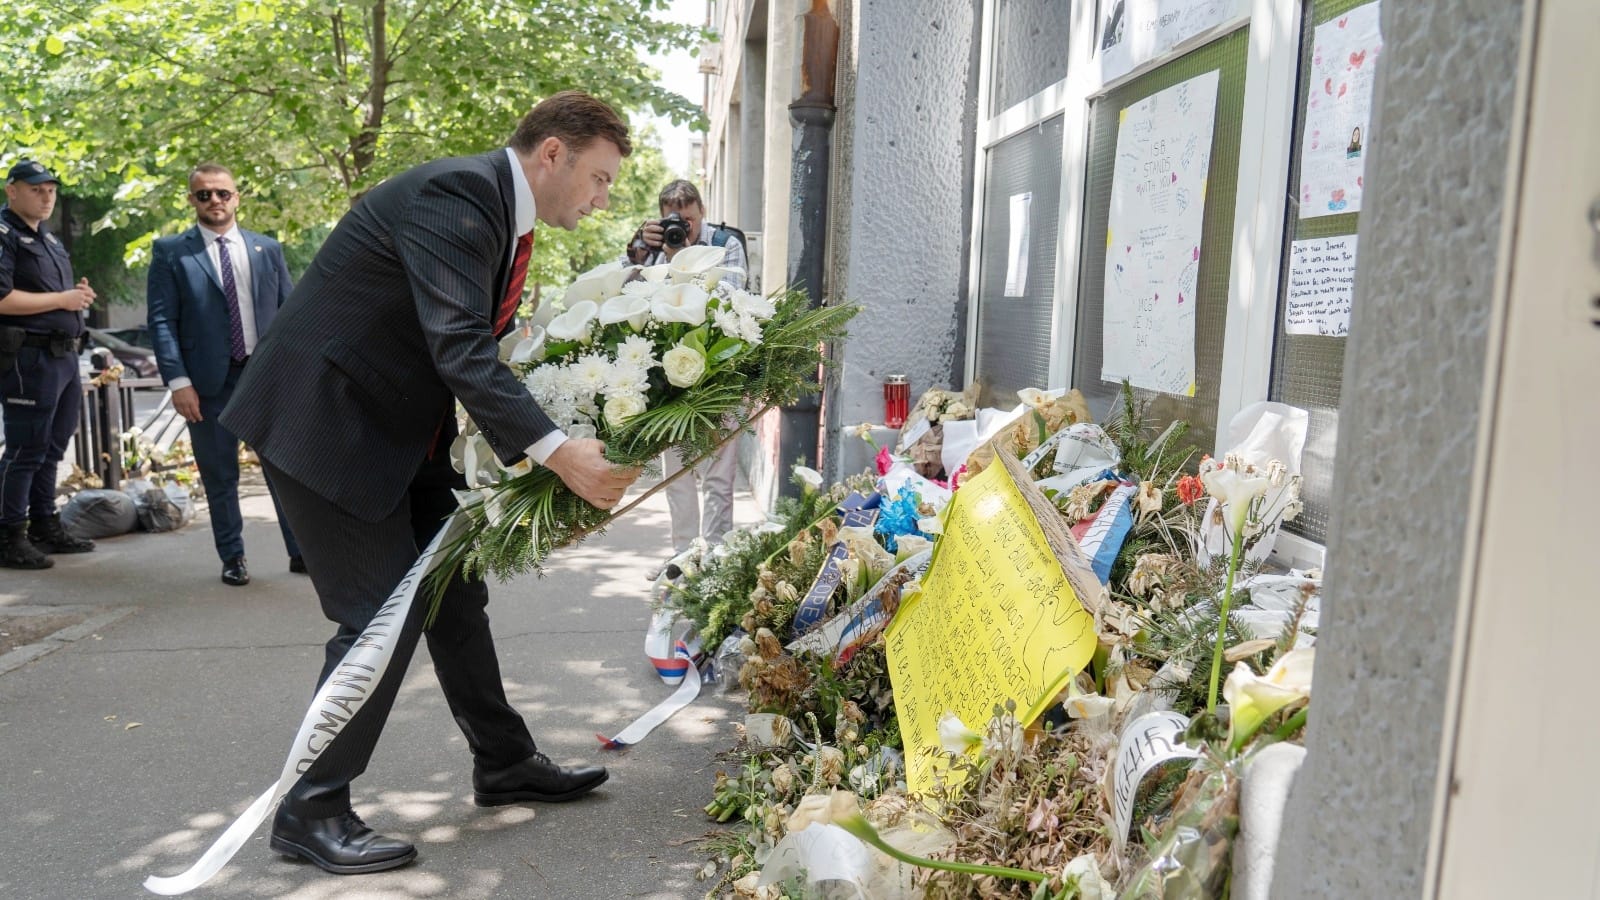 Османи положи цвеќе пред училиштето „Владислав Рибникар“ во Белград